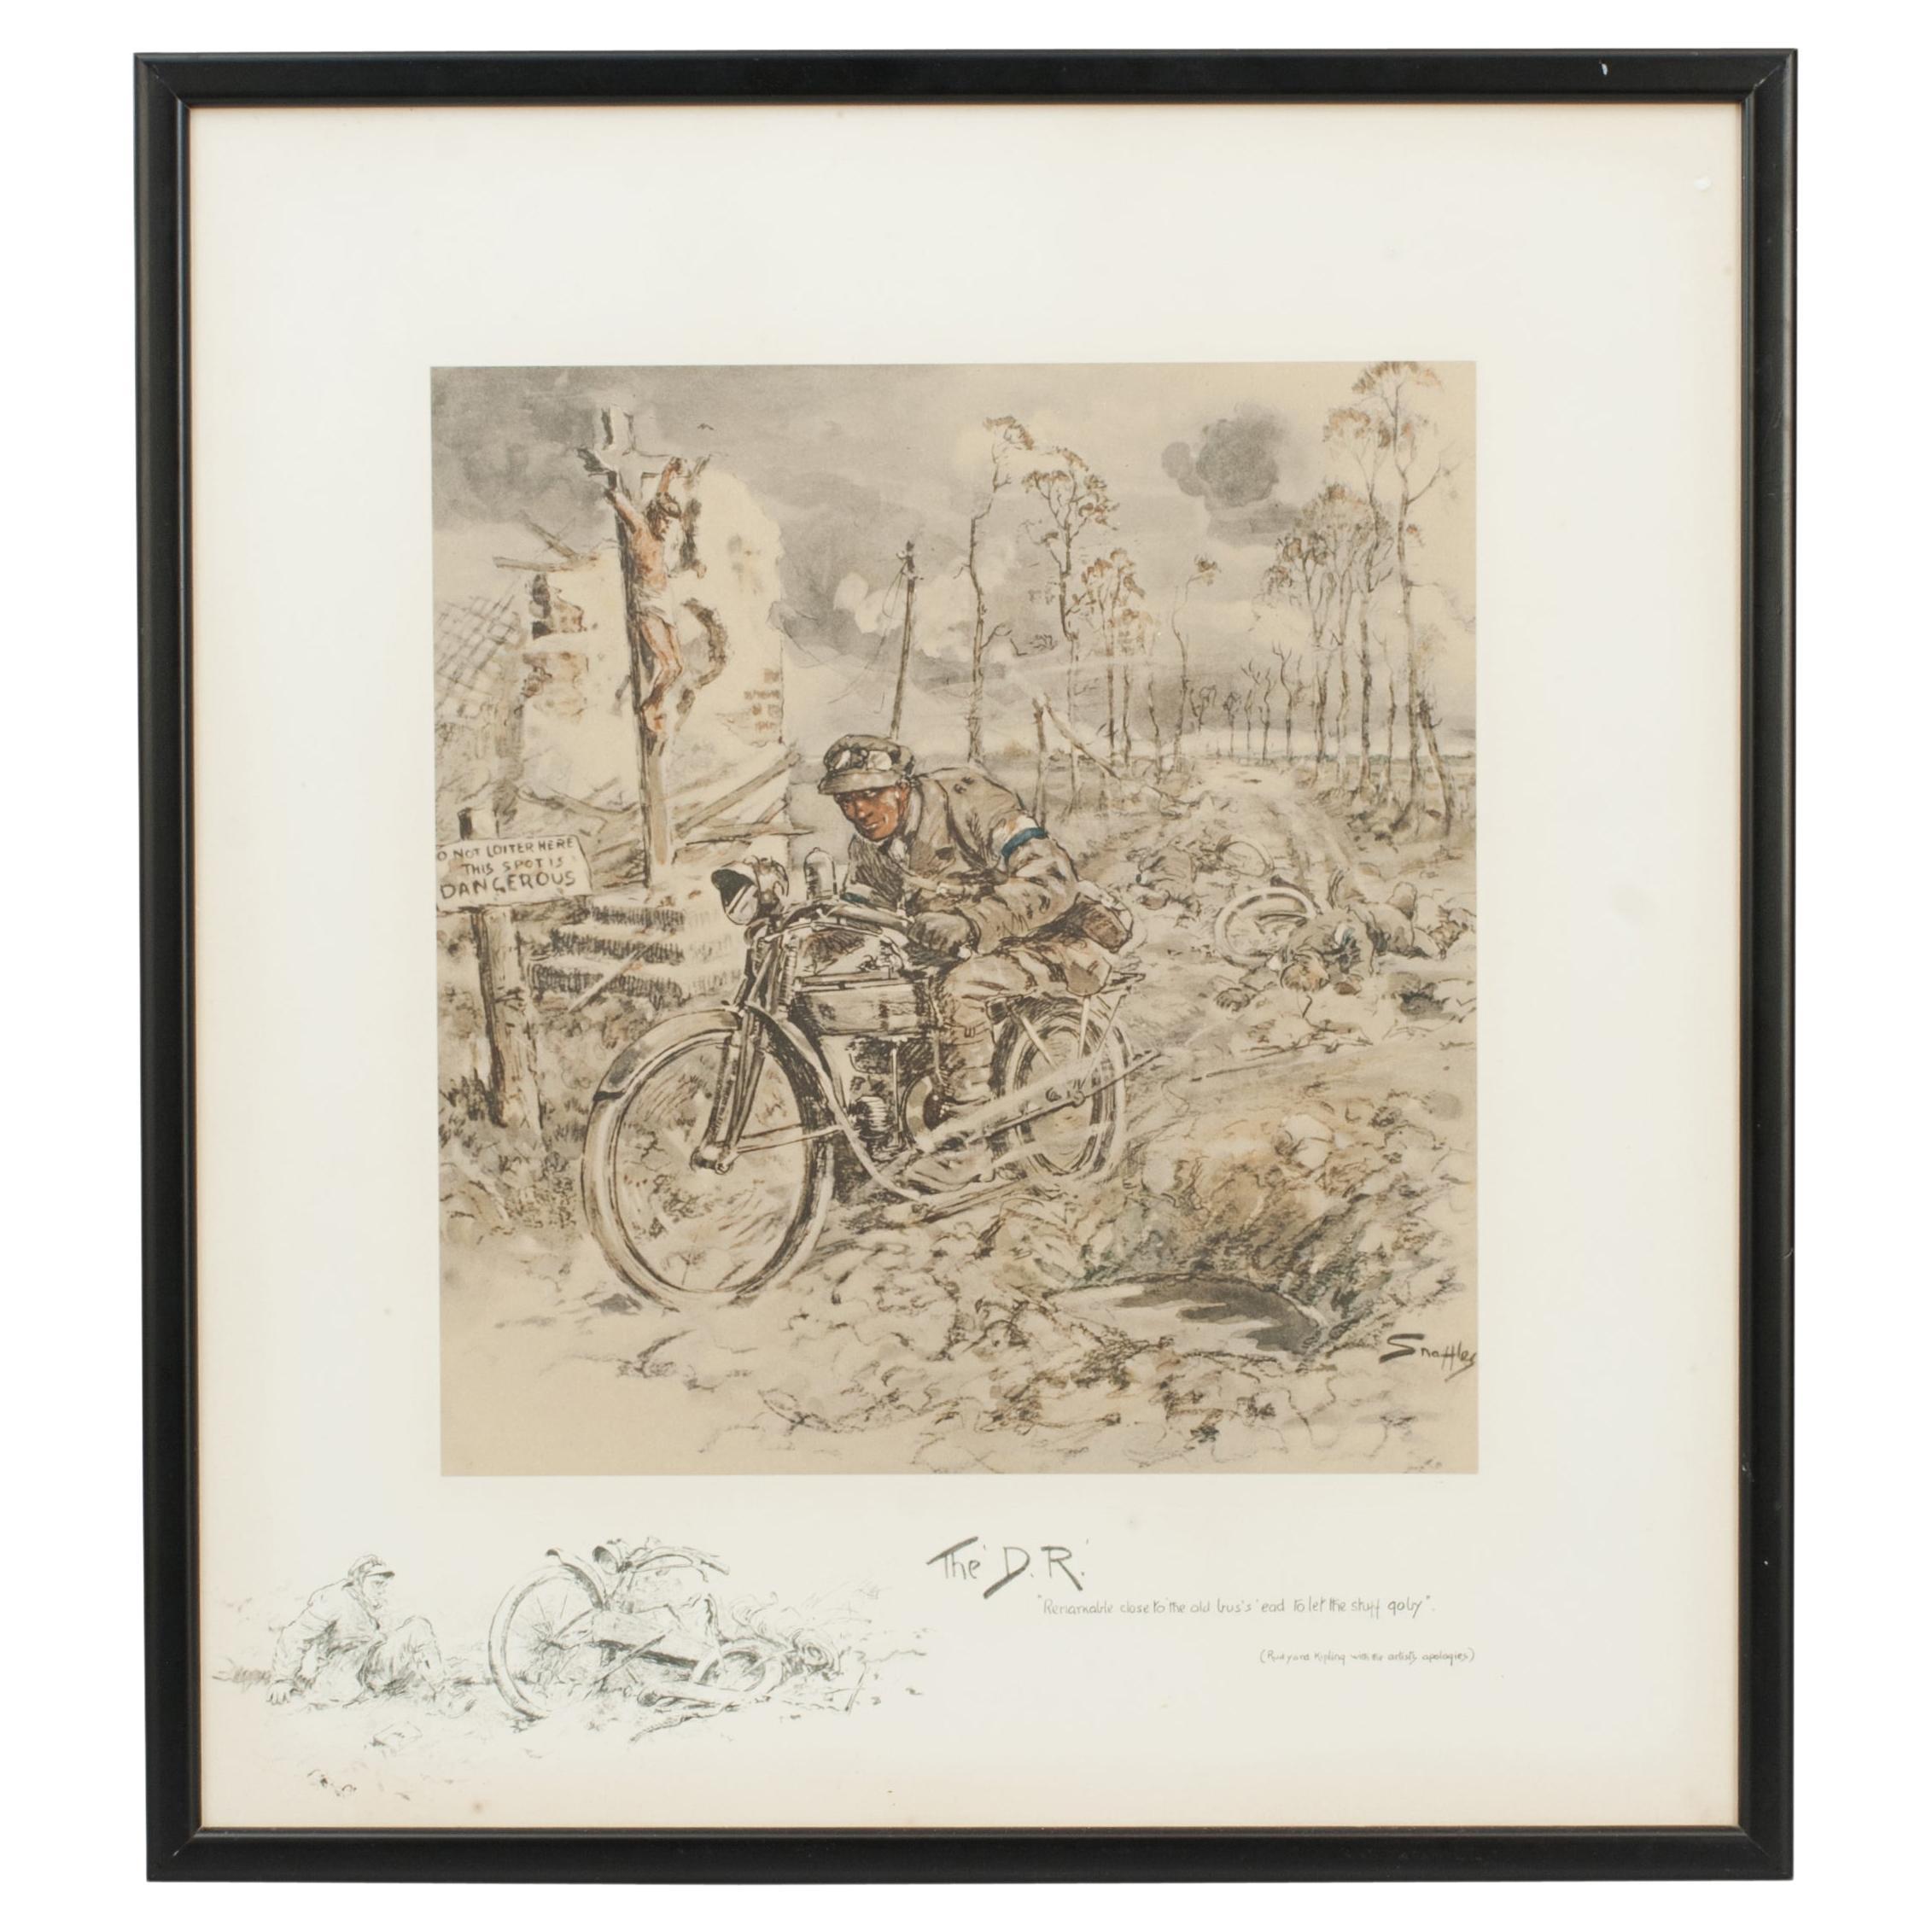 Gravure sur véhicule de la Seconde Guerre mondiale, lithographie de Snaffles, "the D.R.".